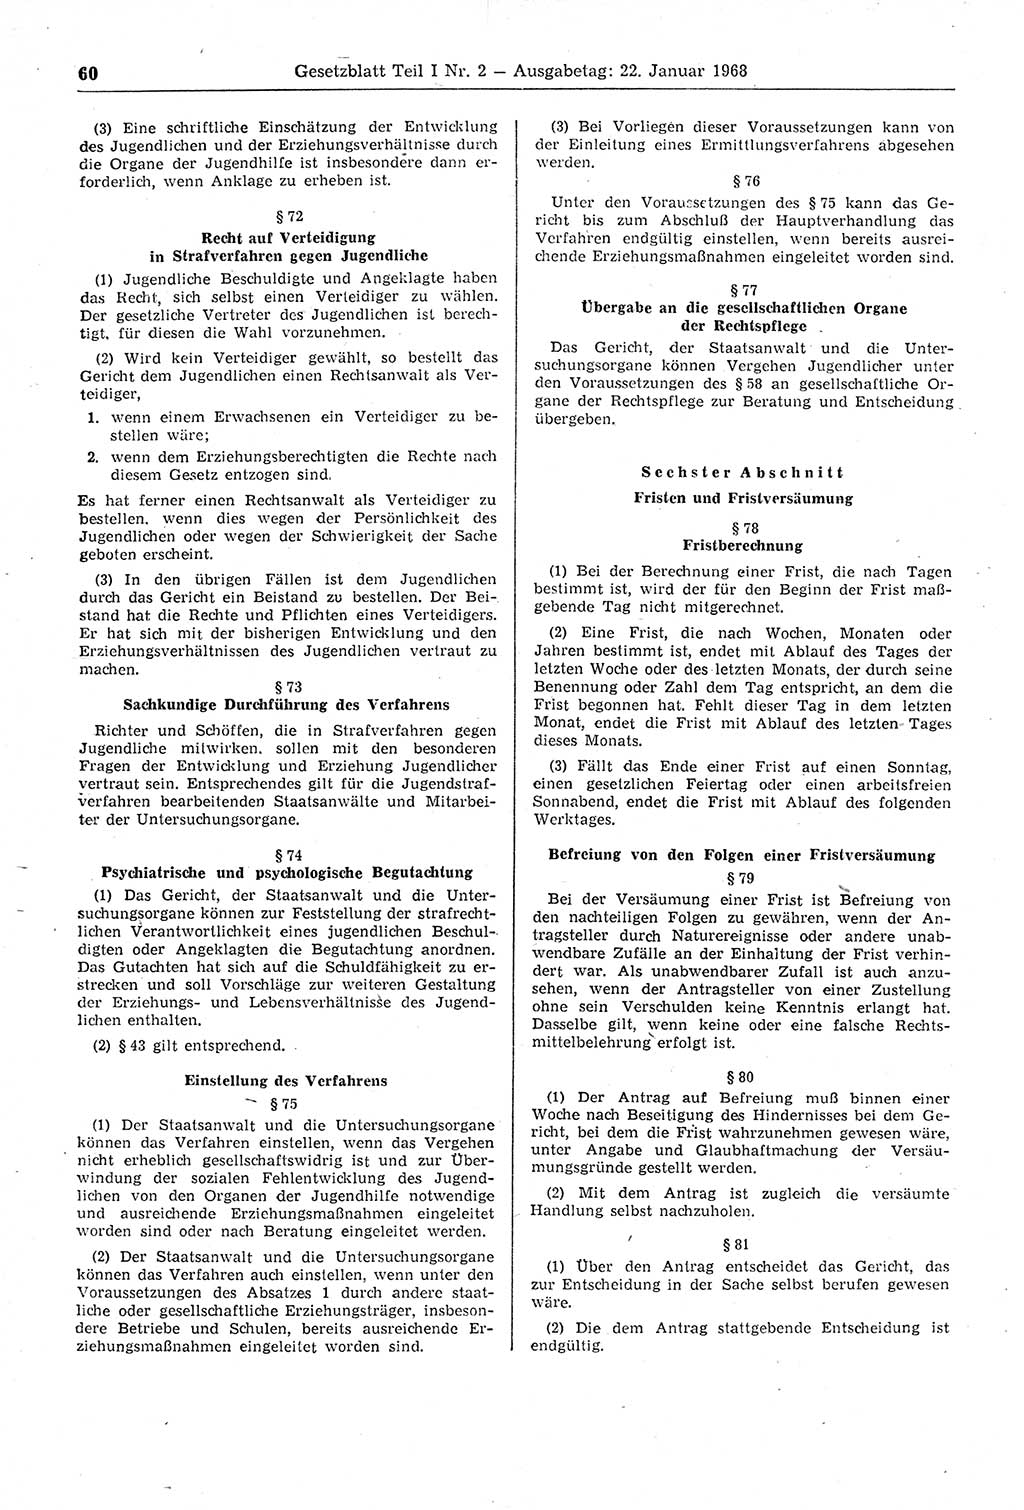 Gesetzblatt (GBl.) der Deutschen Demokratischen Republik (DDR) Teil Ⅰ 1968, Seite 60 (GBl. DDR Ⅰ 1968, S. 60)